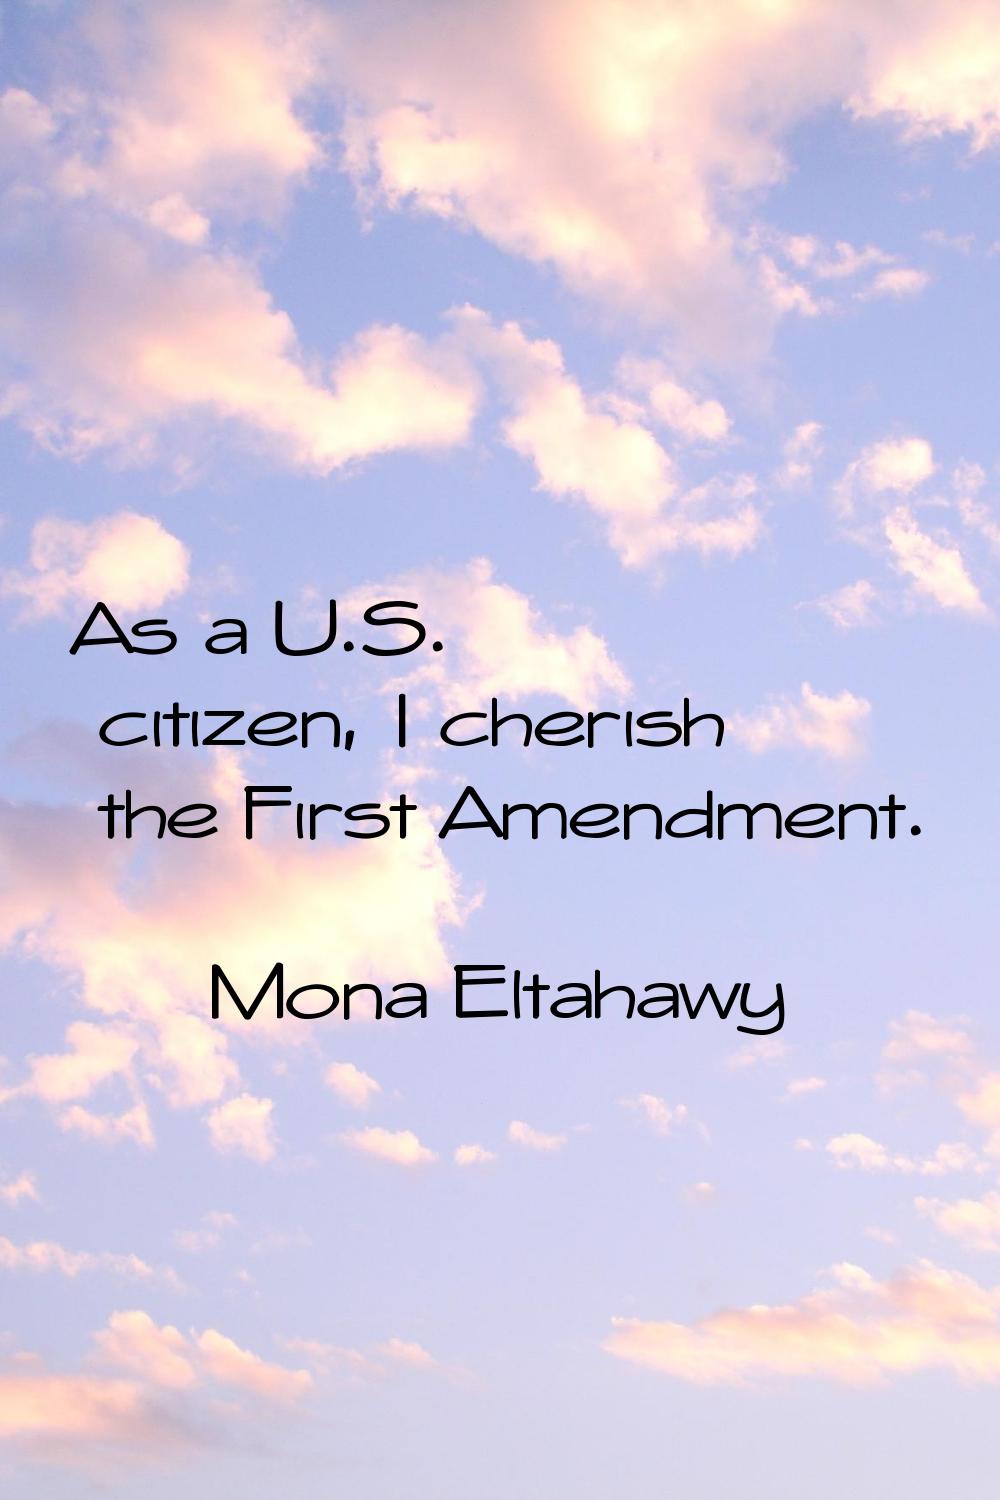 As a U.S. citizen, I cherish the First Amendment.